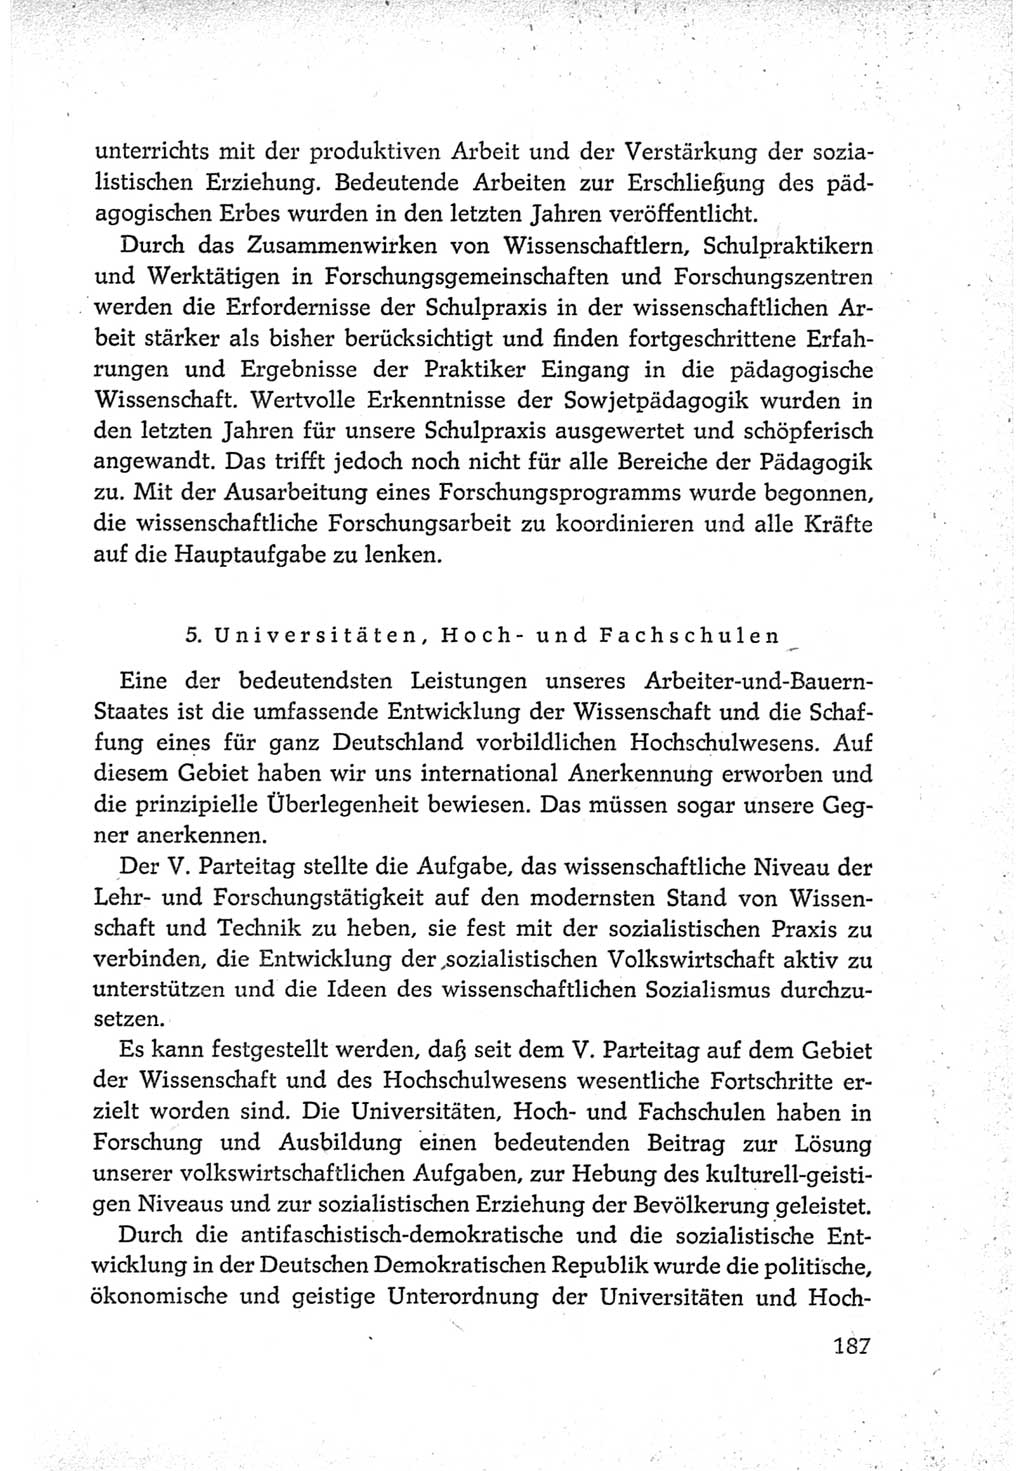 Protokoll der Verhandlungen des Ⅵ. Parteitages der Sozialistischen Einheitspartei Deutschlands (SED) [Deutsche Demokratische Republik (DDR)] 1963, Band Ⅳ, Seite 187 (Prot. Verh. Ⅵ. PT SED DDR 1963, Bd. Ⅳ, S. 187)